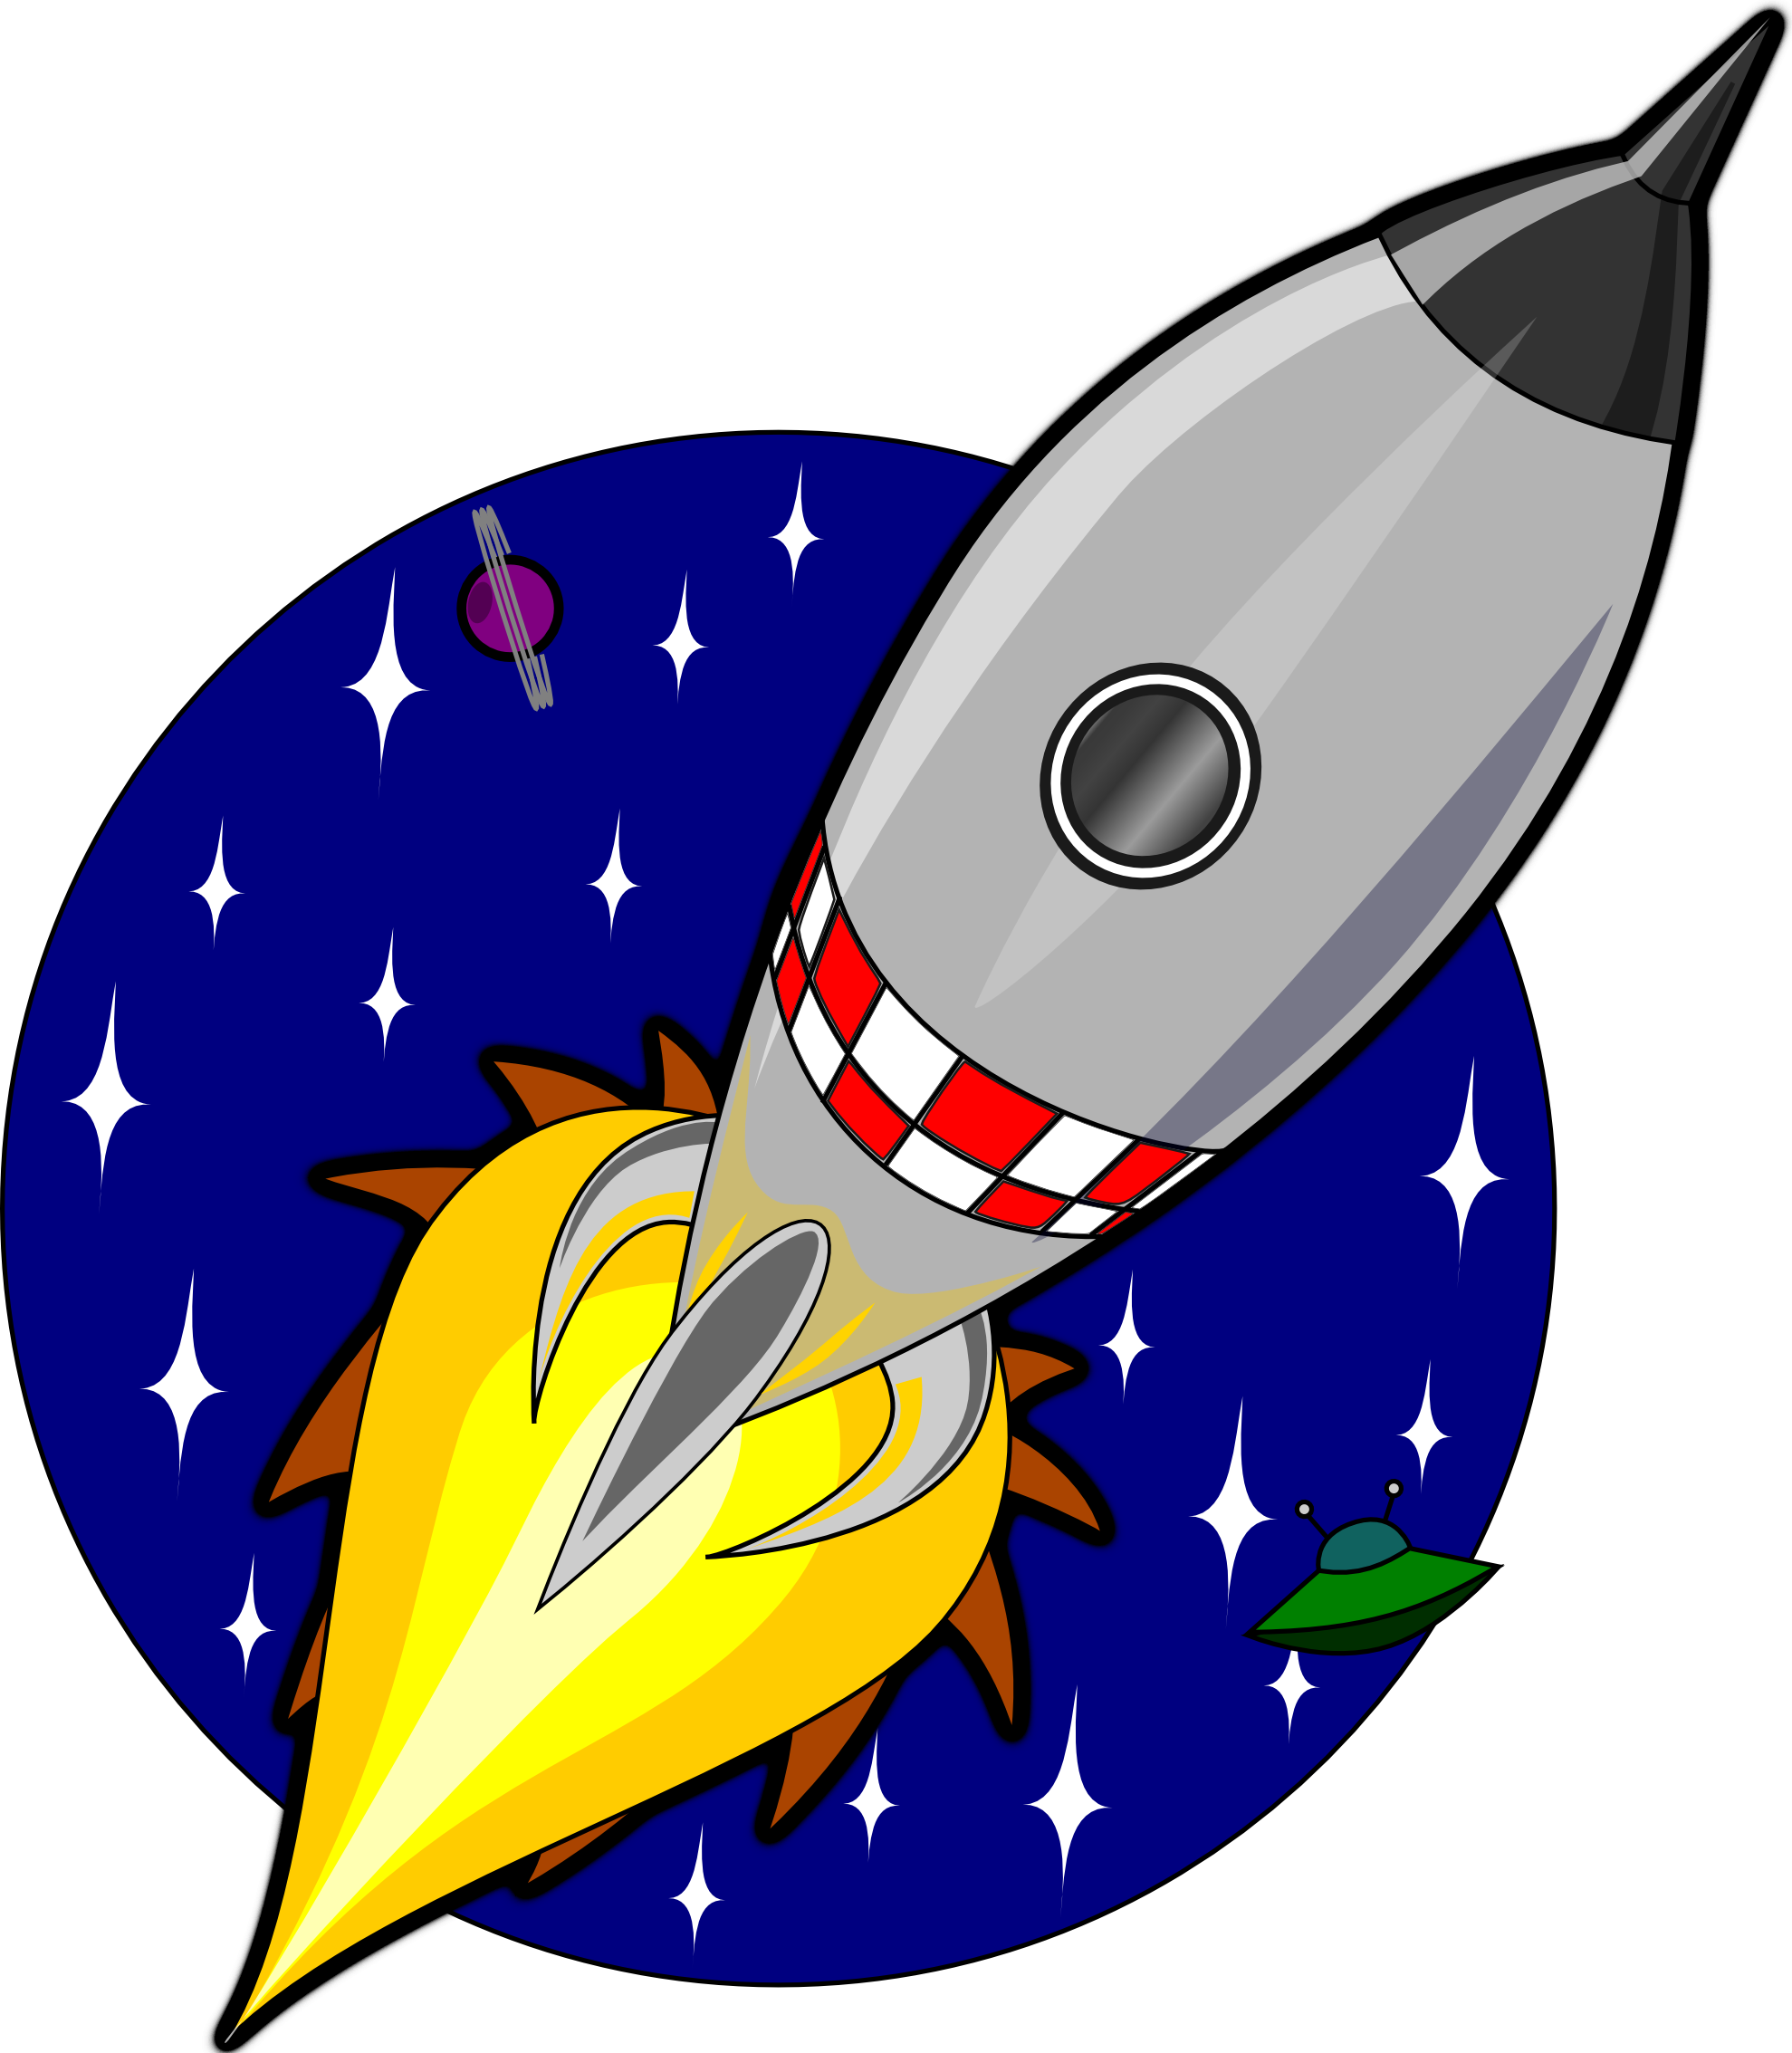 Картинки ракеты для детей дошкольного возраста. Ракета для детей. Ракета рисунок. Ракета мультяшная. Космическая ракета для детей.